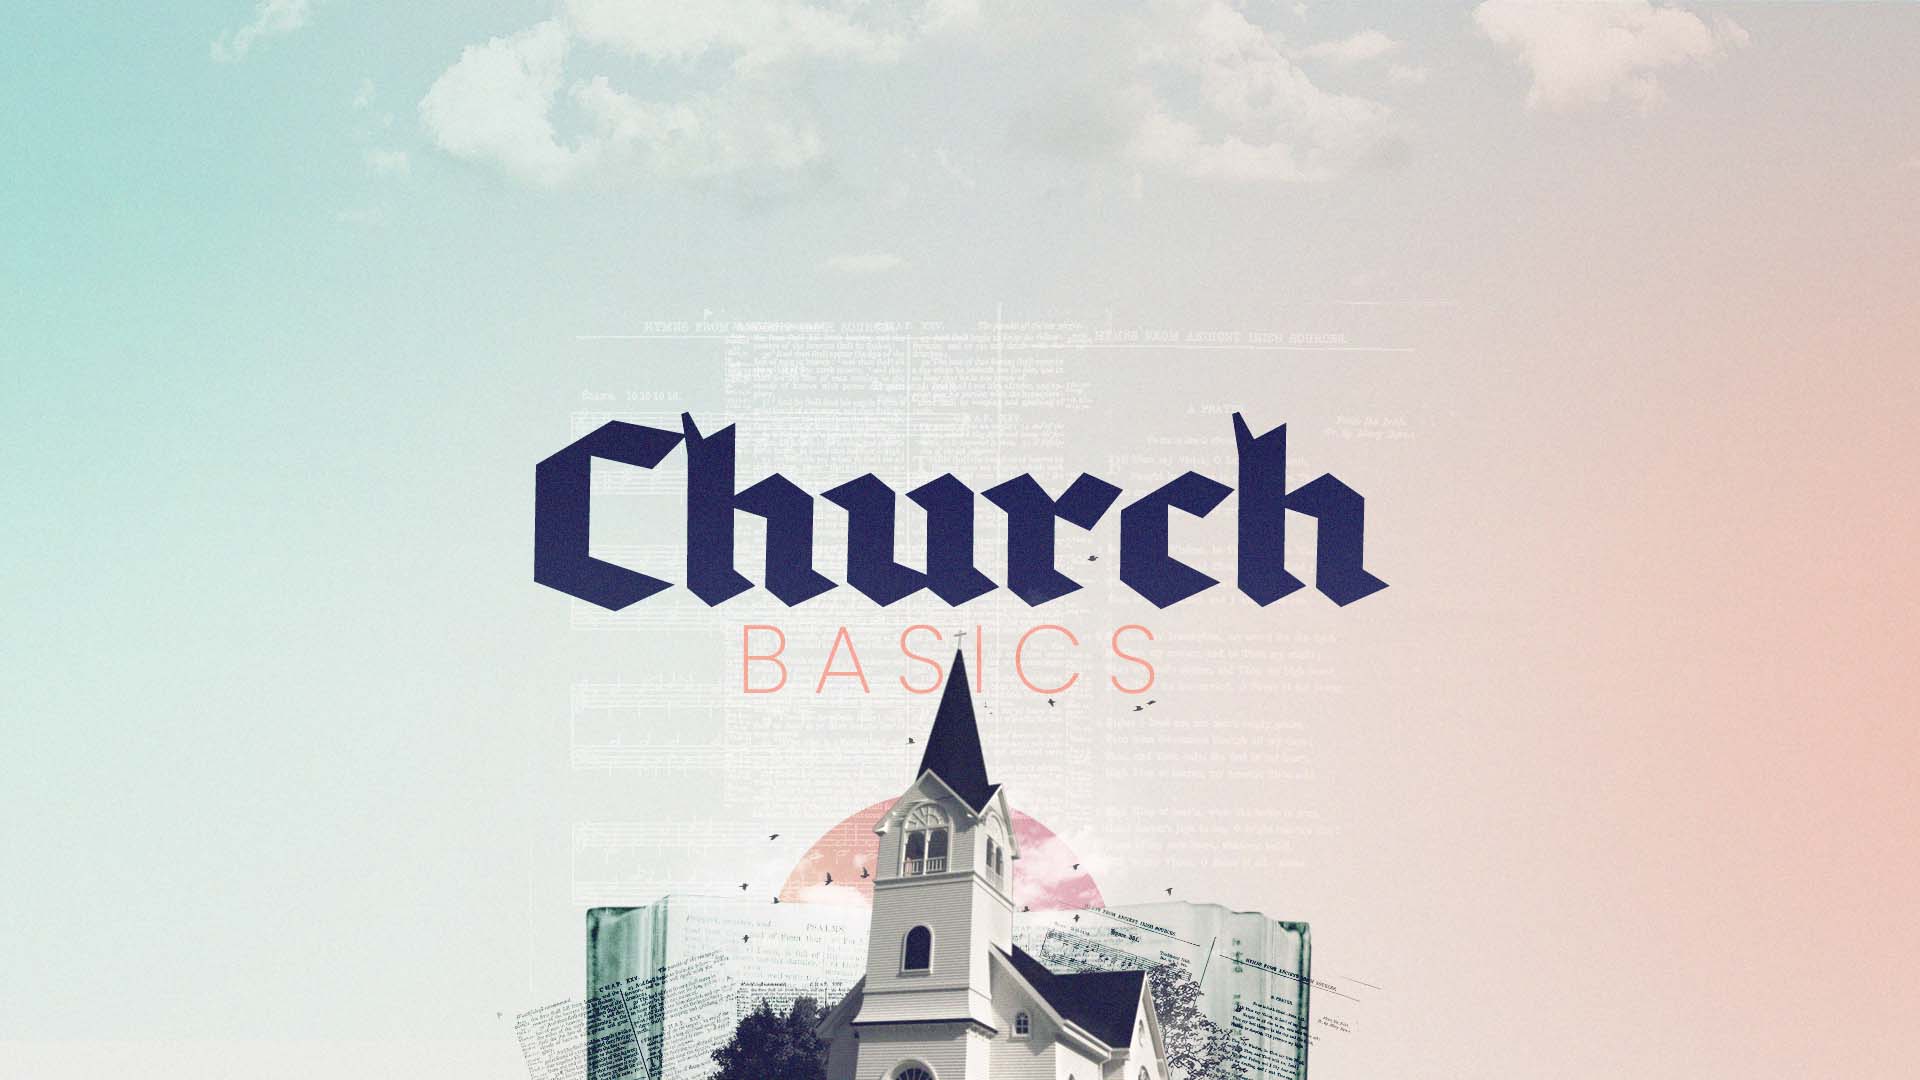 Church Basics